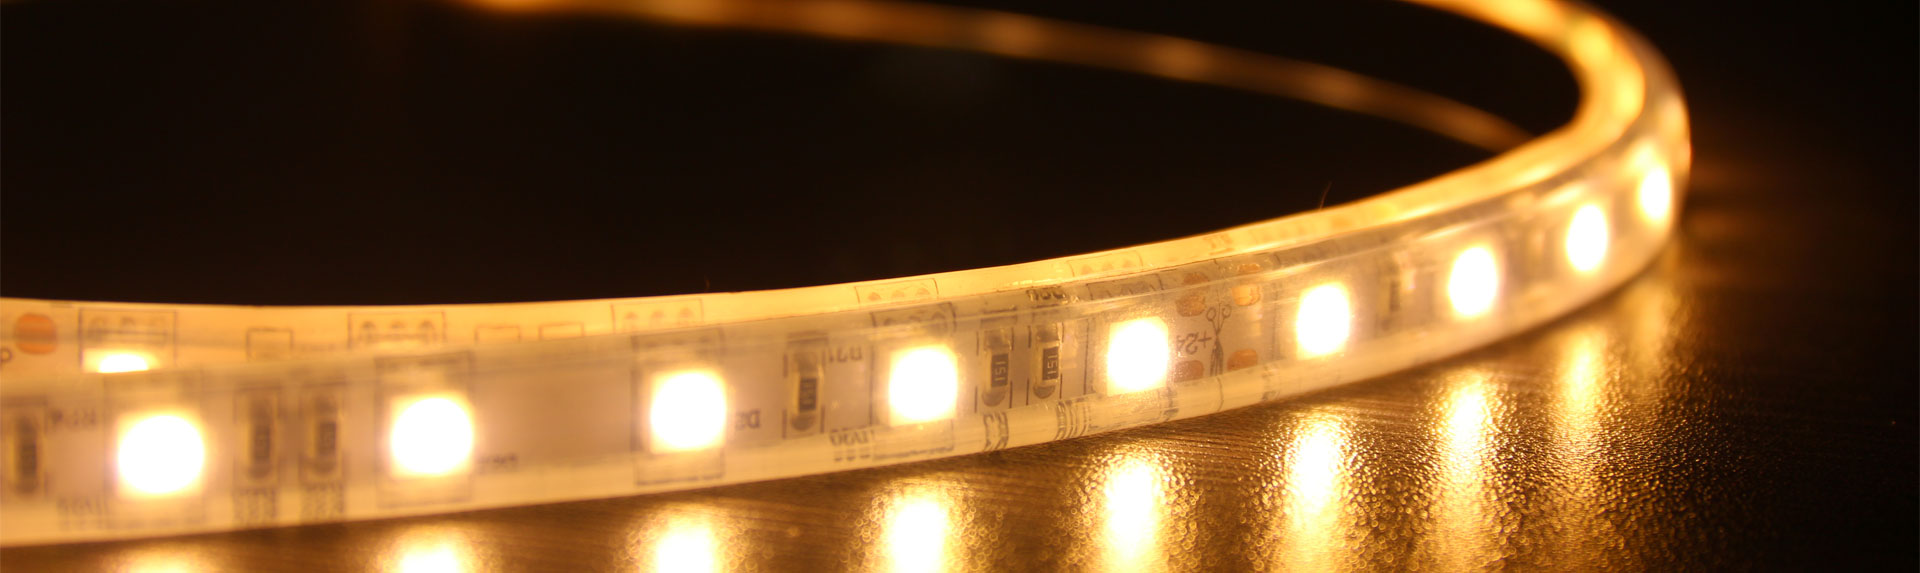 ip68防水led燈條 - LUGISK Strip